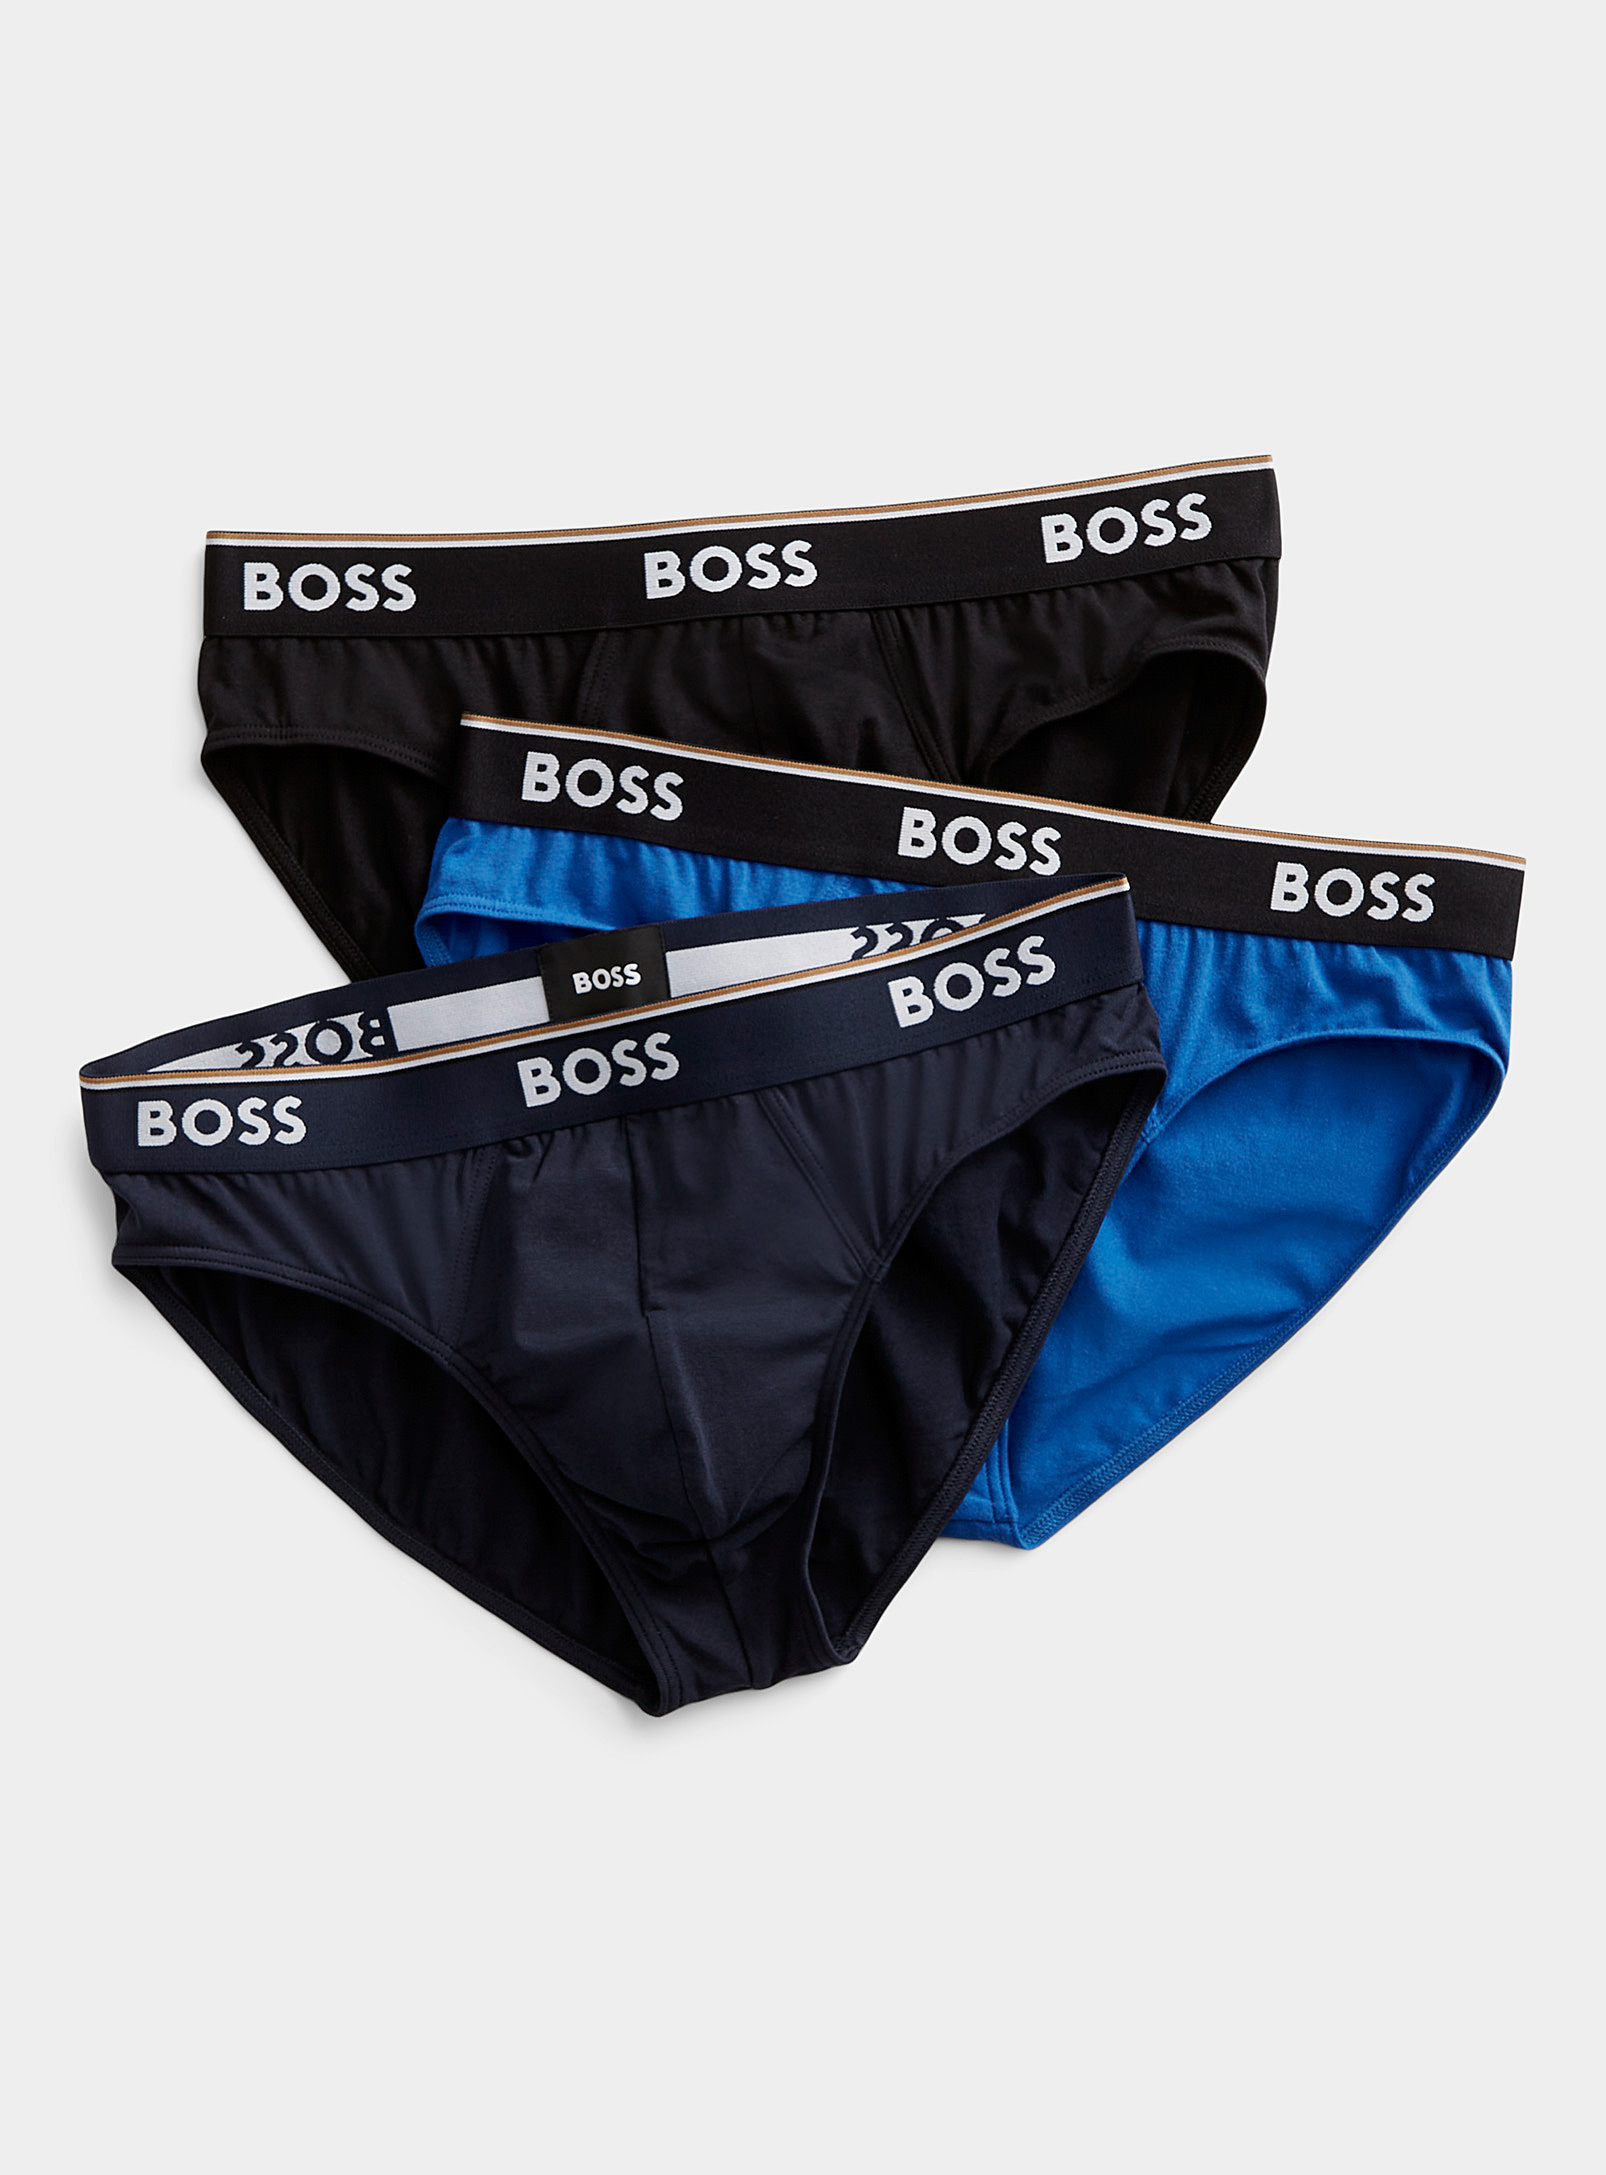 BOSS - Men's Shades of blue briefs 3-pack